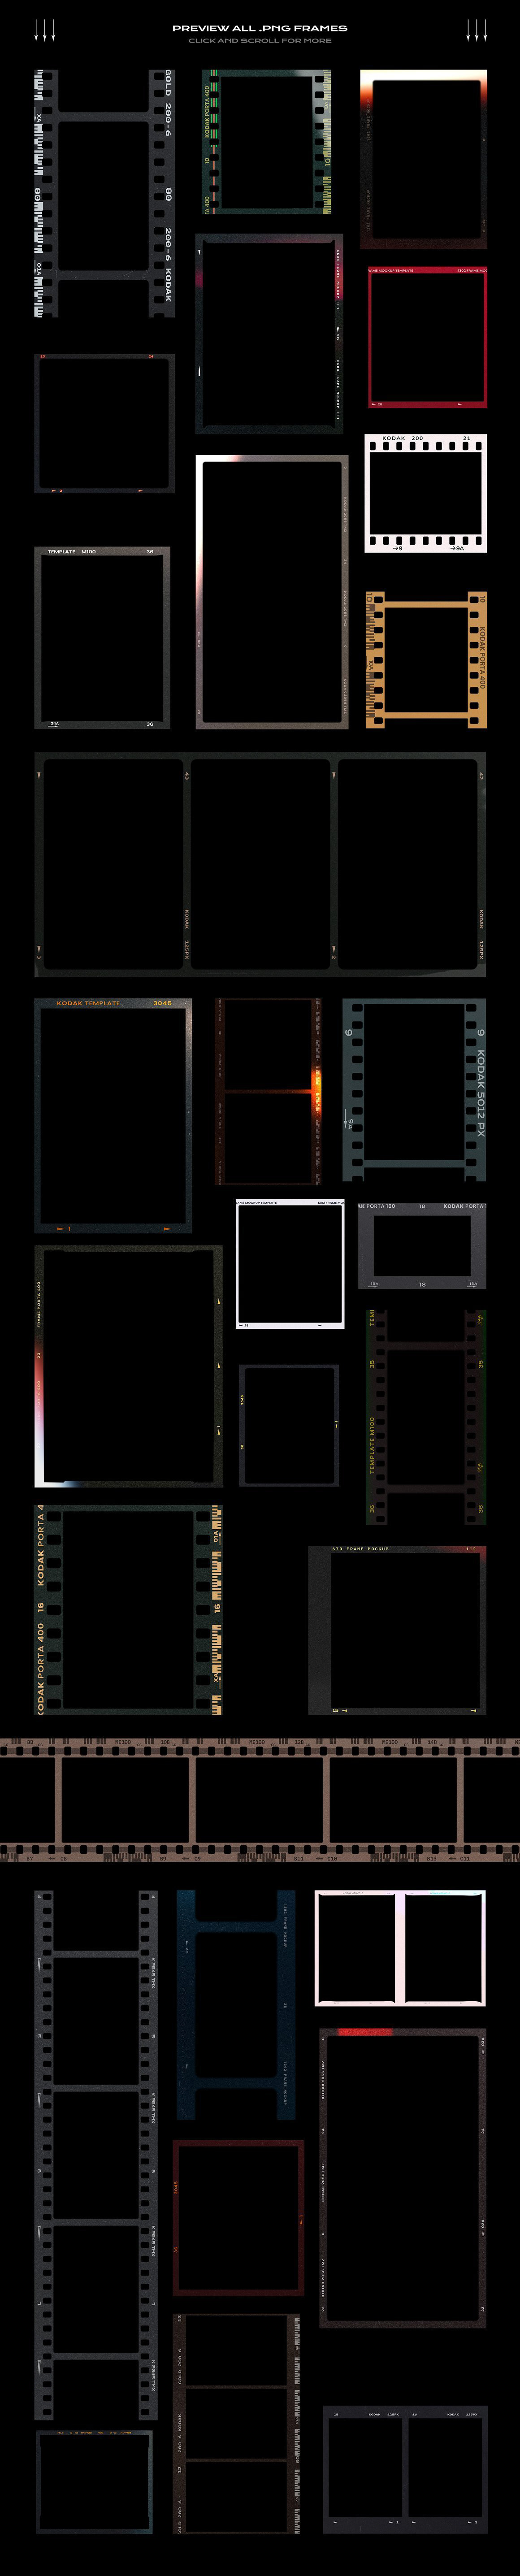 Film   film frame film frame mockup free mockup  Free Template Mockup mockups template texture